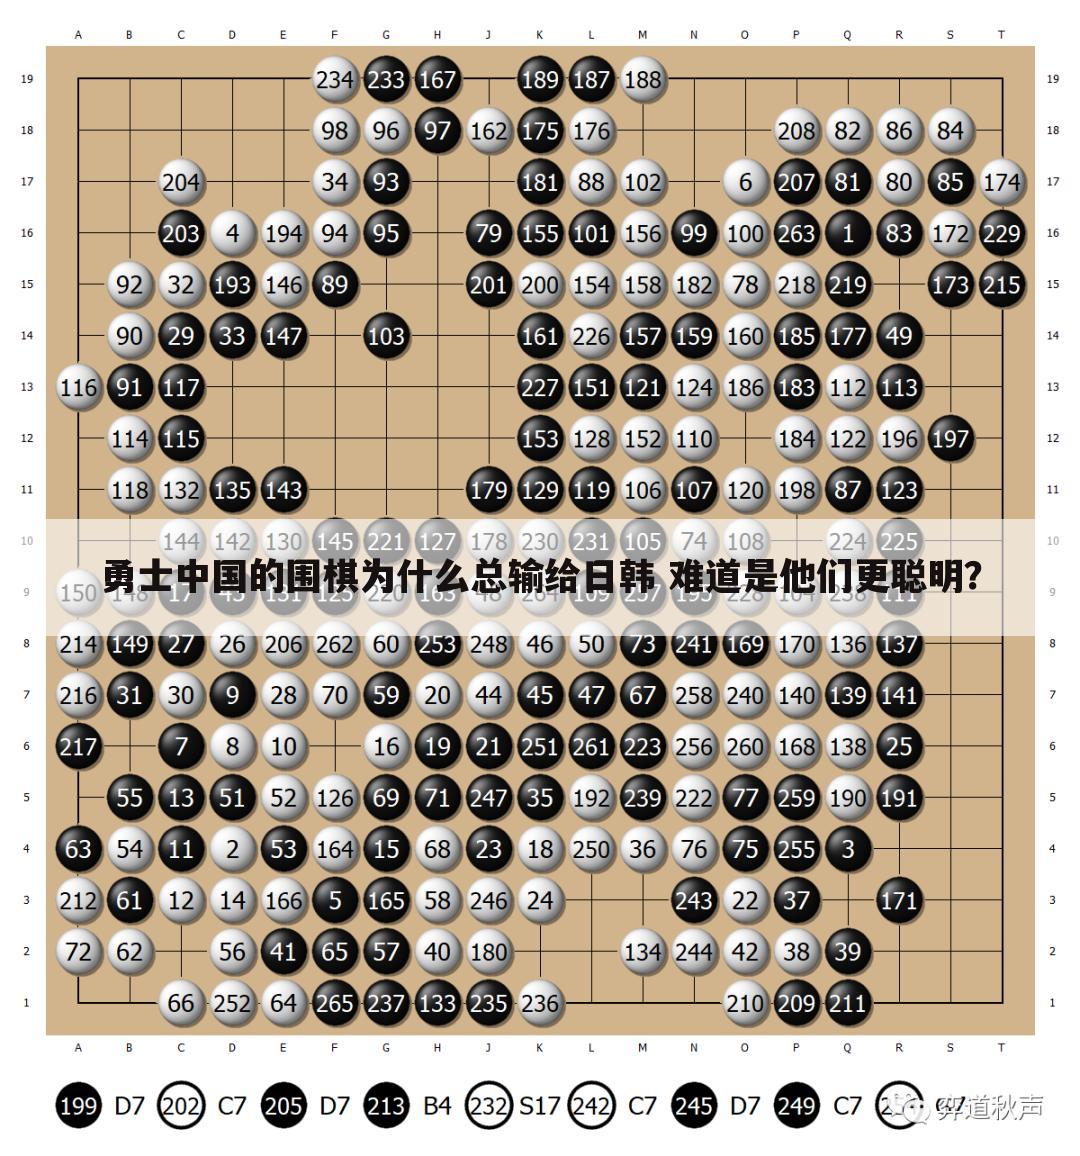 <b>中国的围棋为什么总输给日韩 难道是他们更聪明？</b>